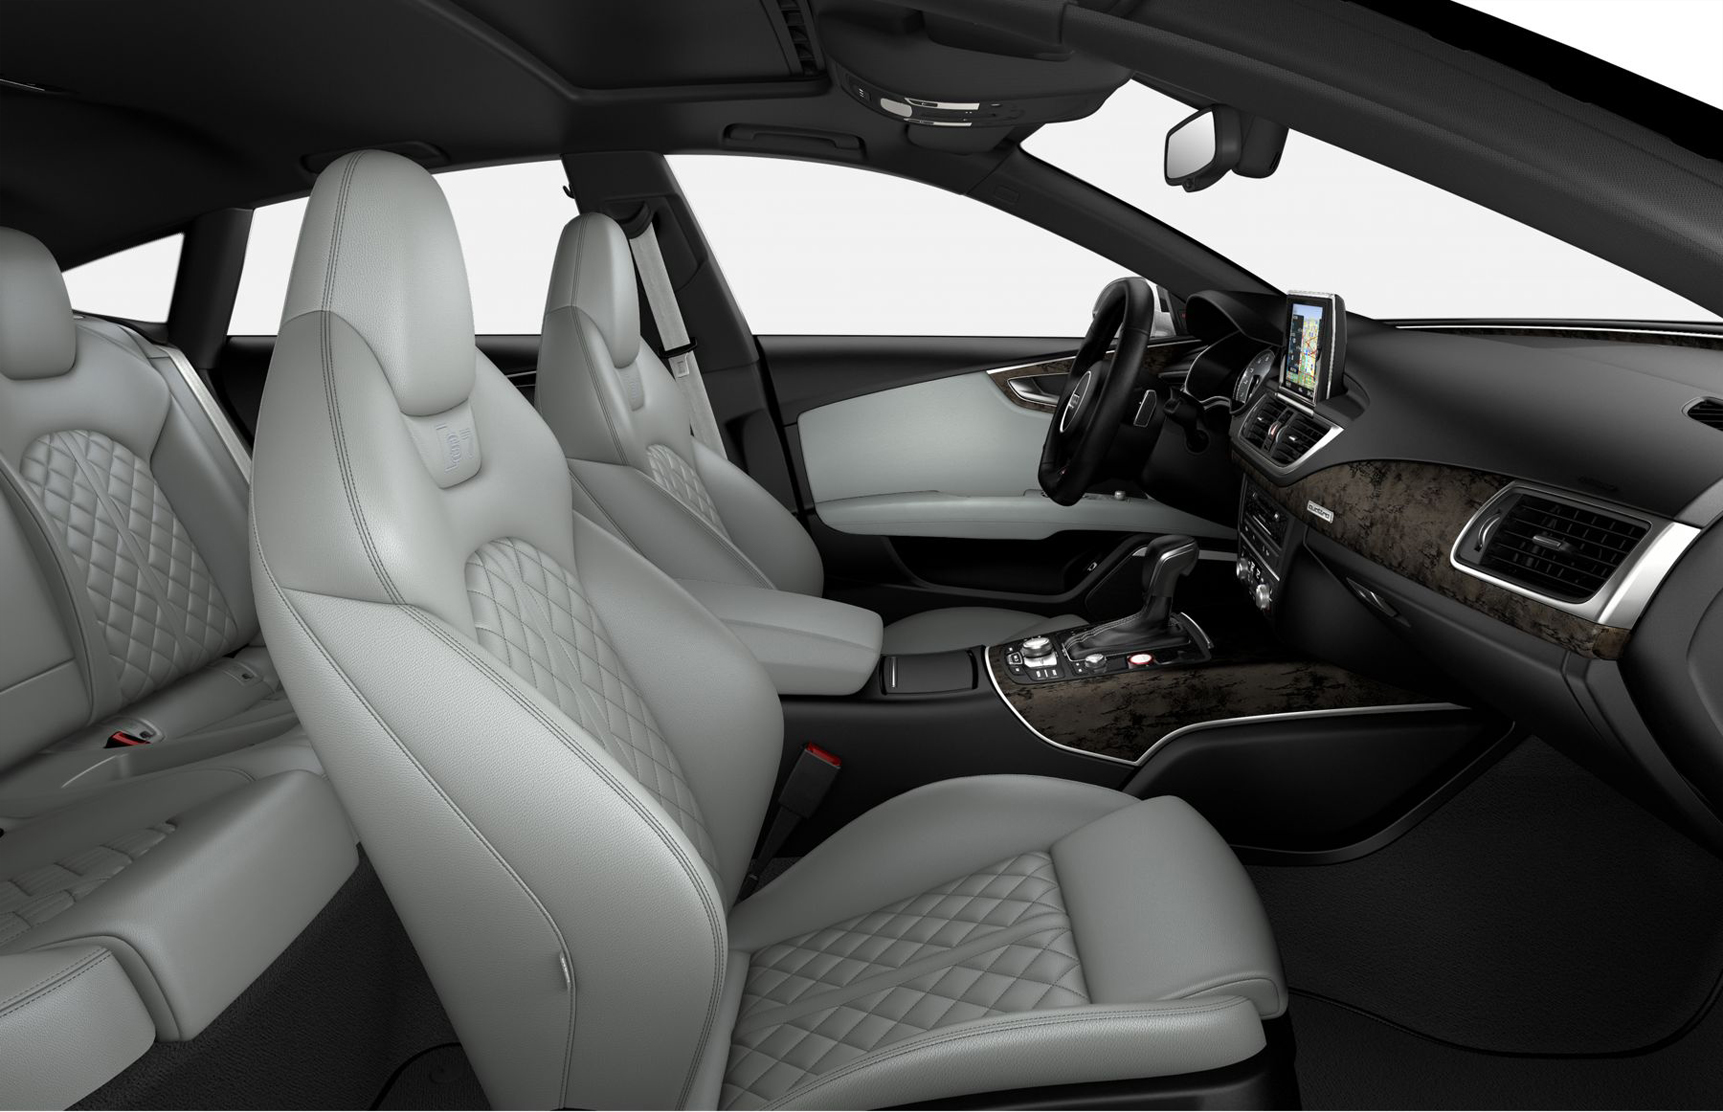 Audi S7 Prestige interior front seat view